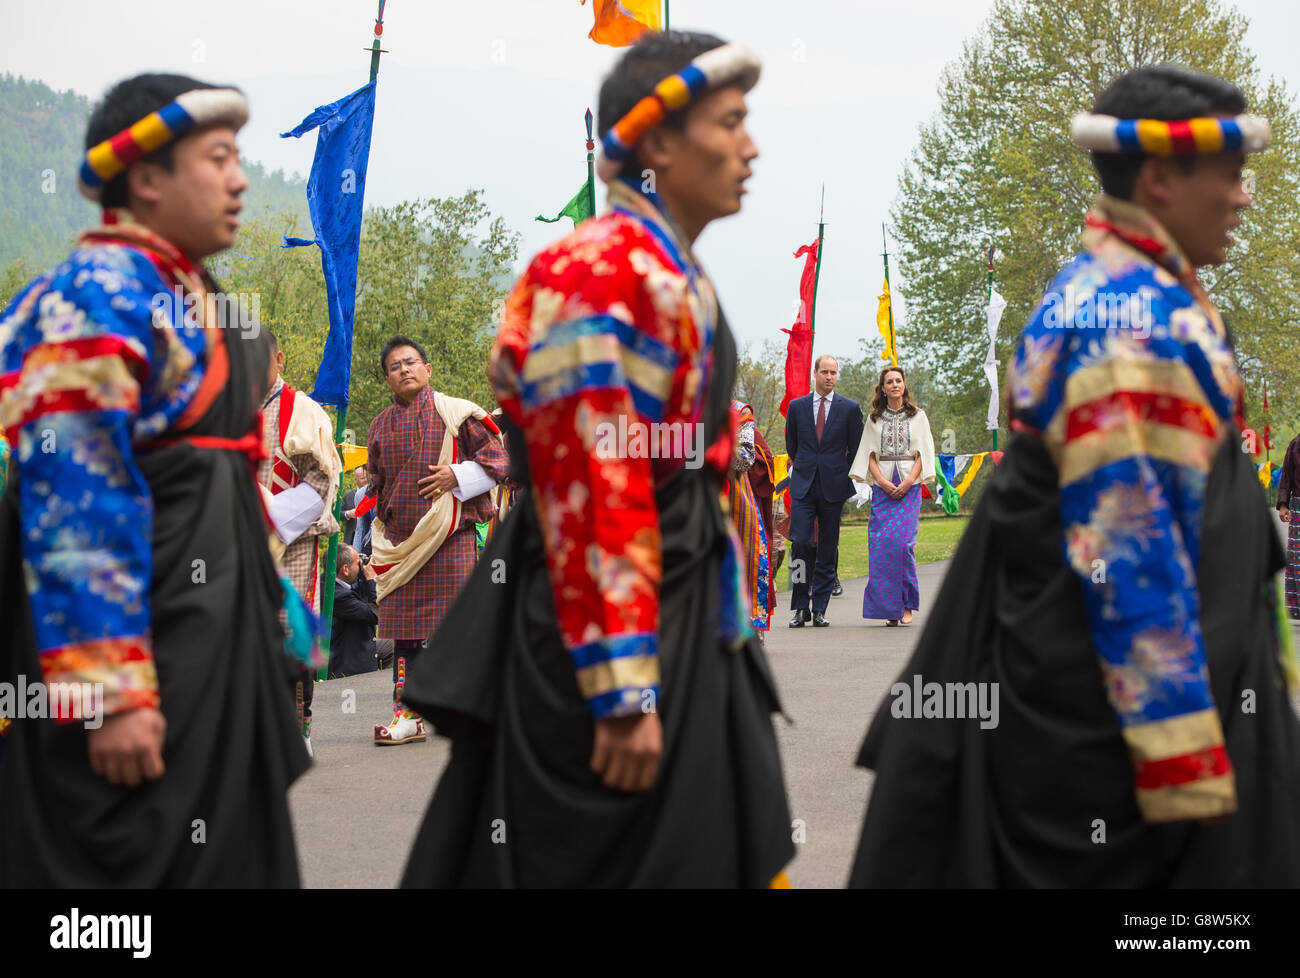 Le duc et la duchesse de Cambridge prennent part à une procession de bienvenue traditionnelle de la Chipdrel à Tashichho Dzong, à Thimphu, au Bhoutan, le cinquième jour de la tournée royale en Inde et au Bhoutan. Banque D'Images